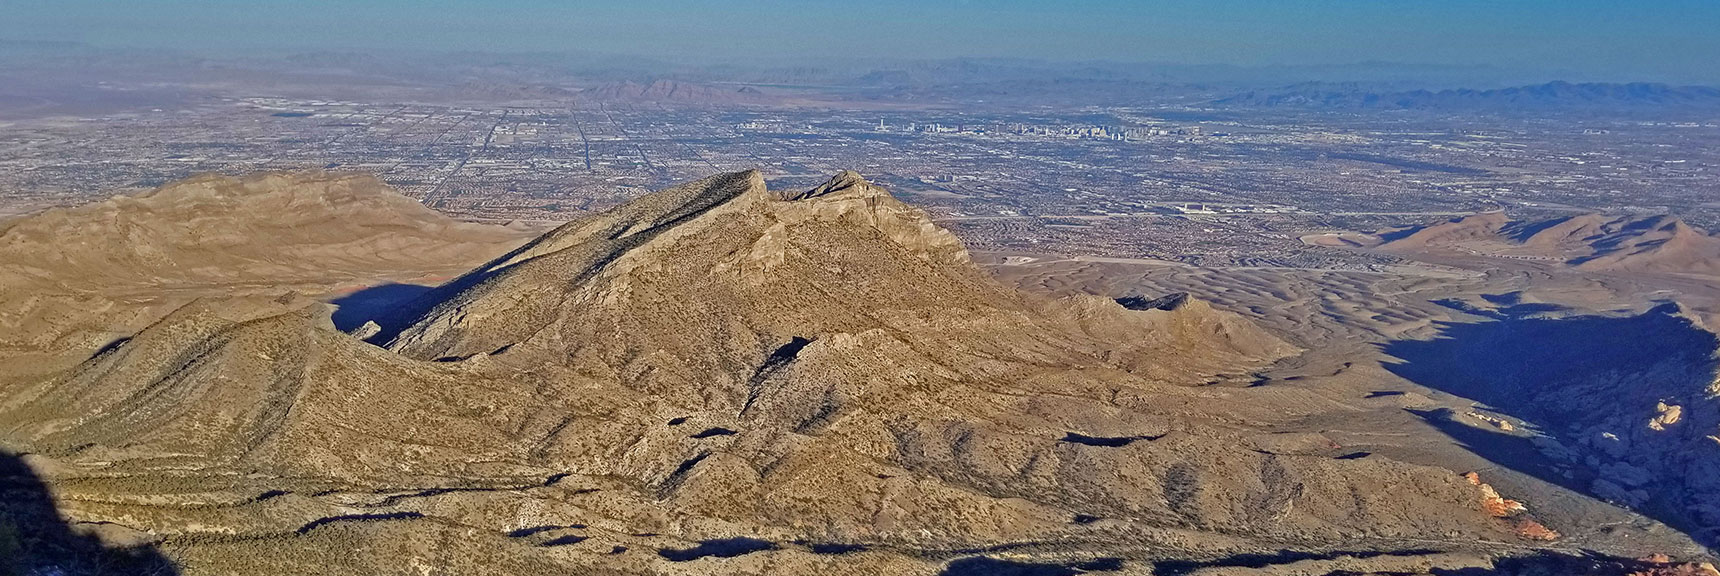 Damsel Peak from El Padre Mt. Approach Ridge | La Madre Mountain,, El Padre Mountain, Burnt Peak | La Madre Mountains Wilderness, Nevada